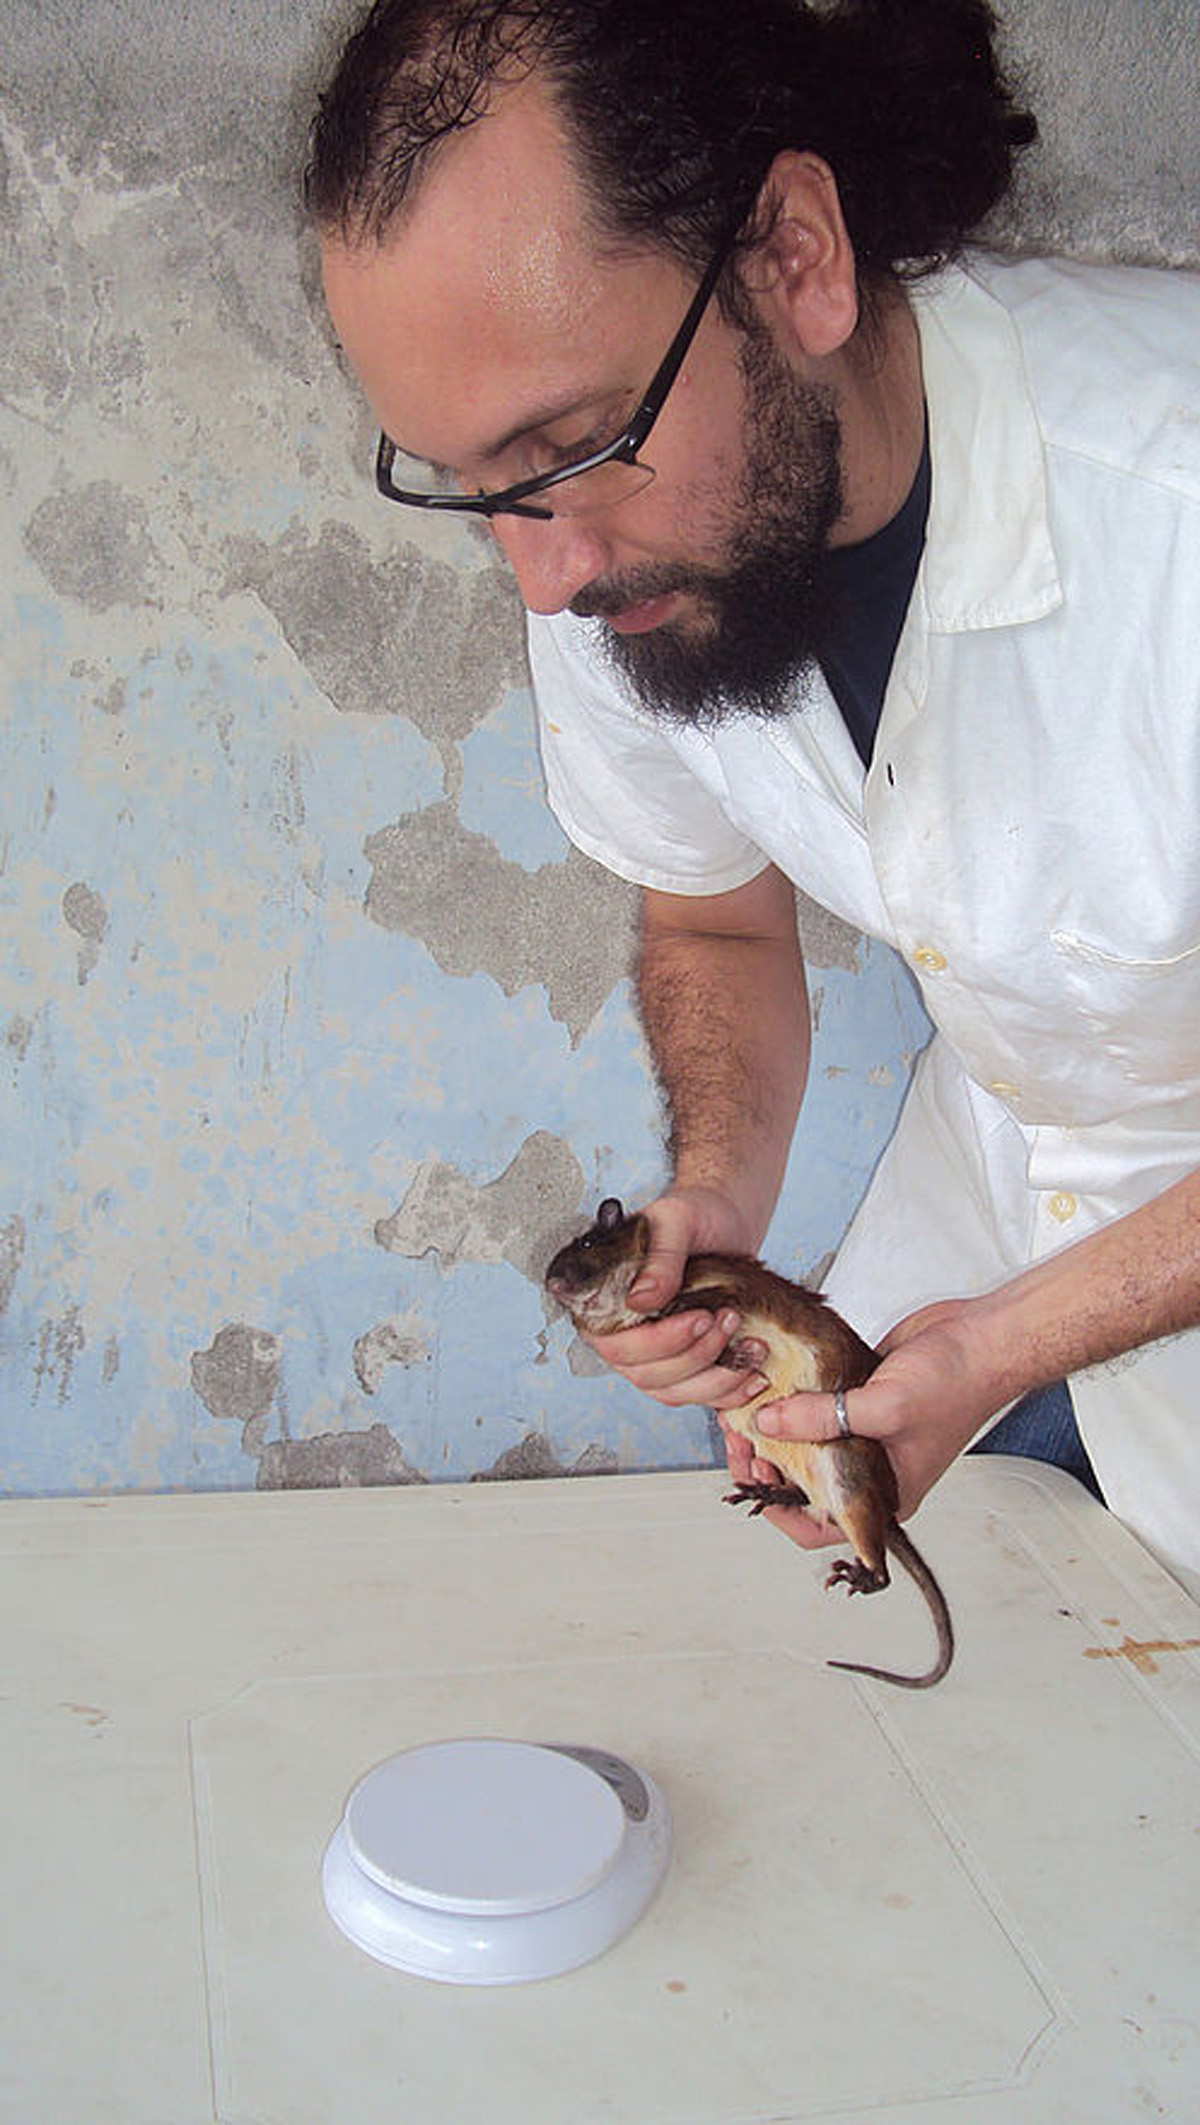 La rata semiespinosa habita desde Centroamérica hasta la costa pacífica de Colombia y Ecuador.